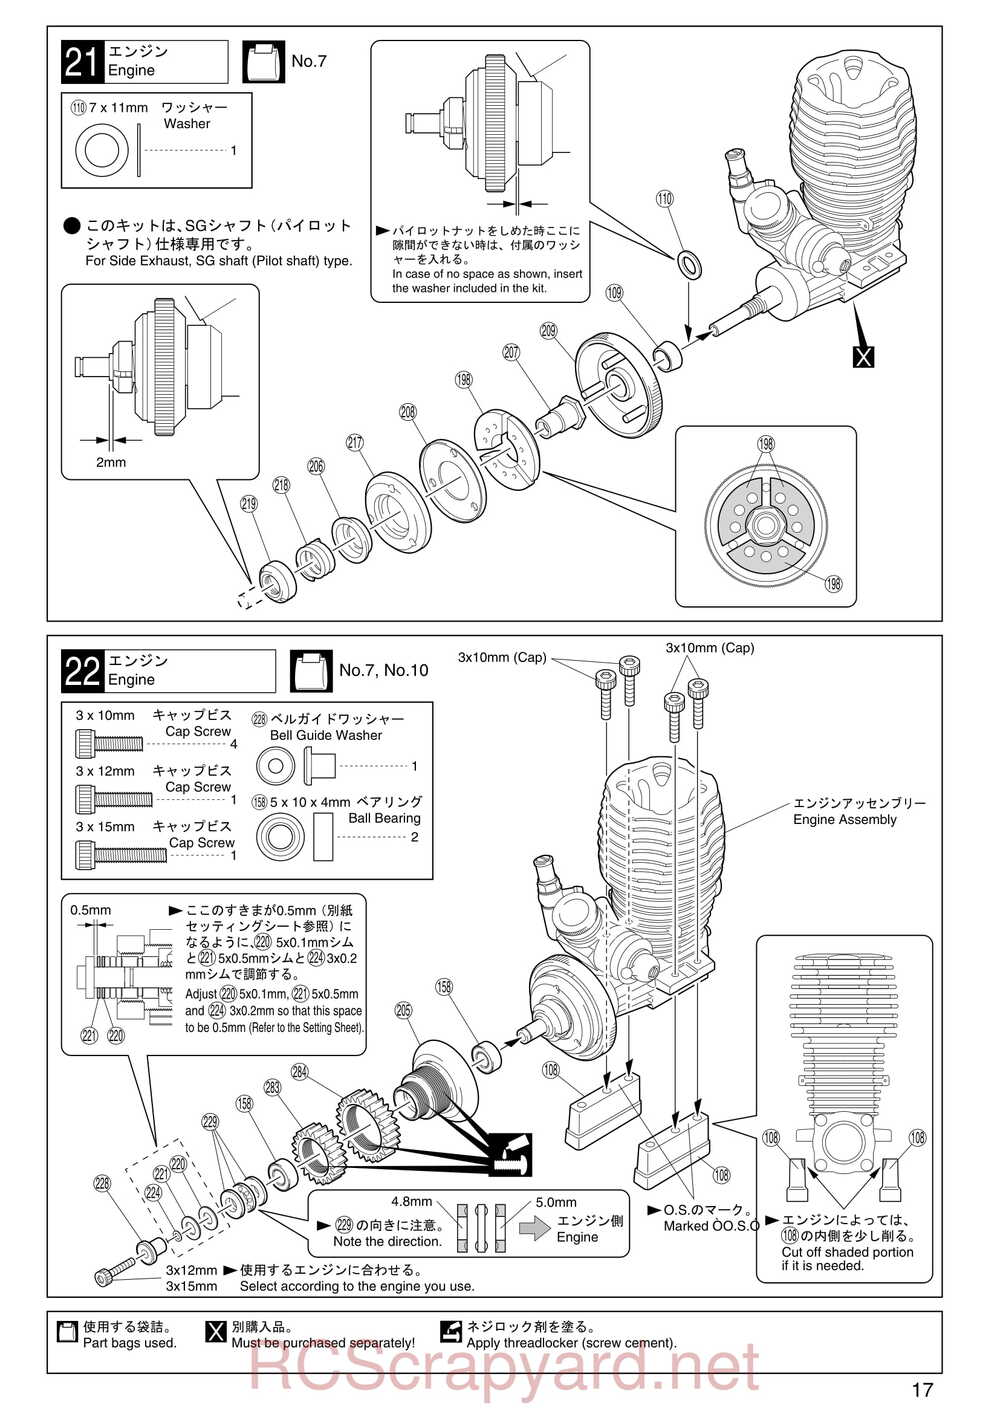 Kyosho - 31255 - V-One RR Evolution - Manual - Page 17